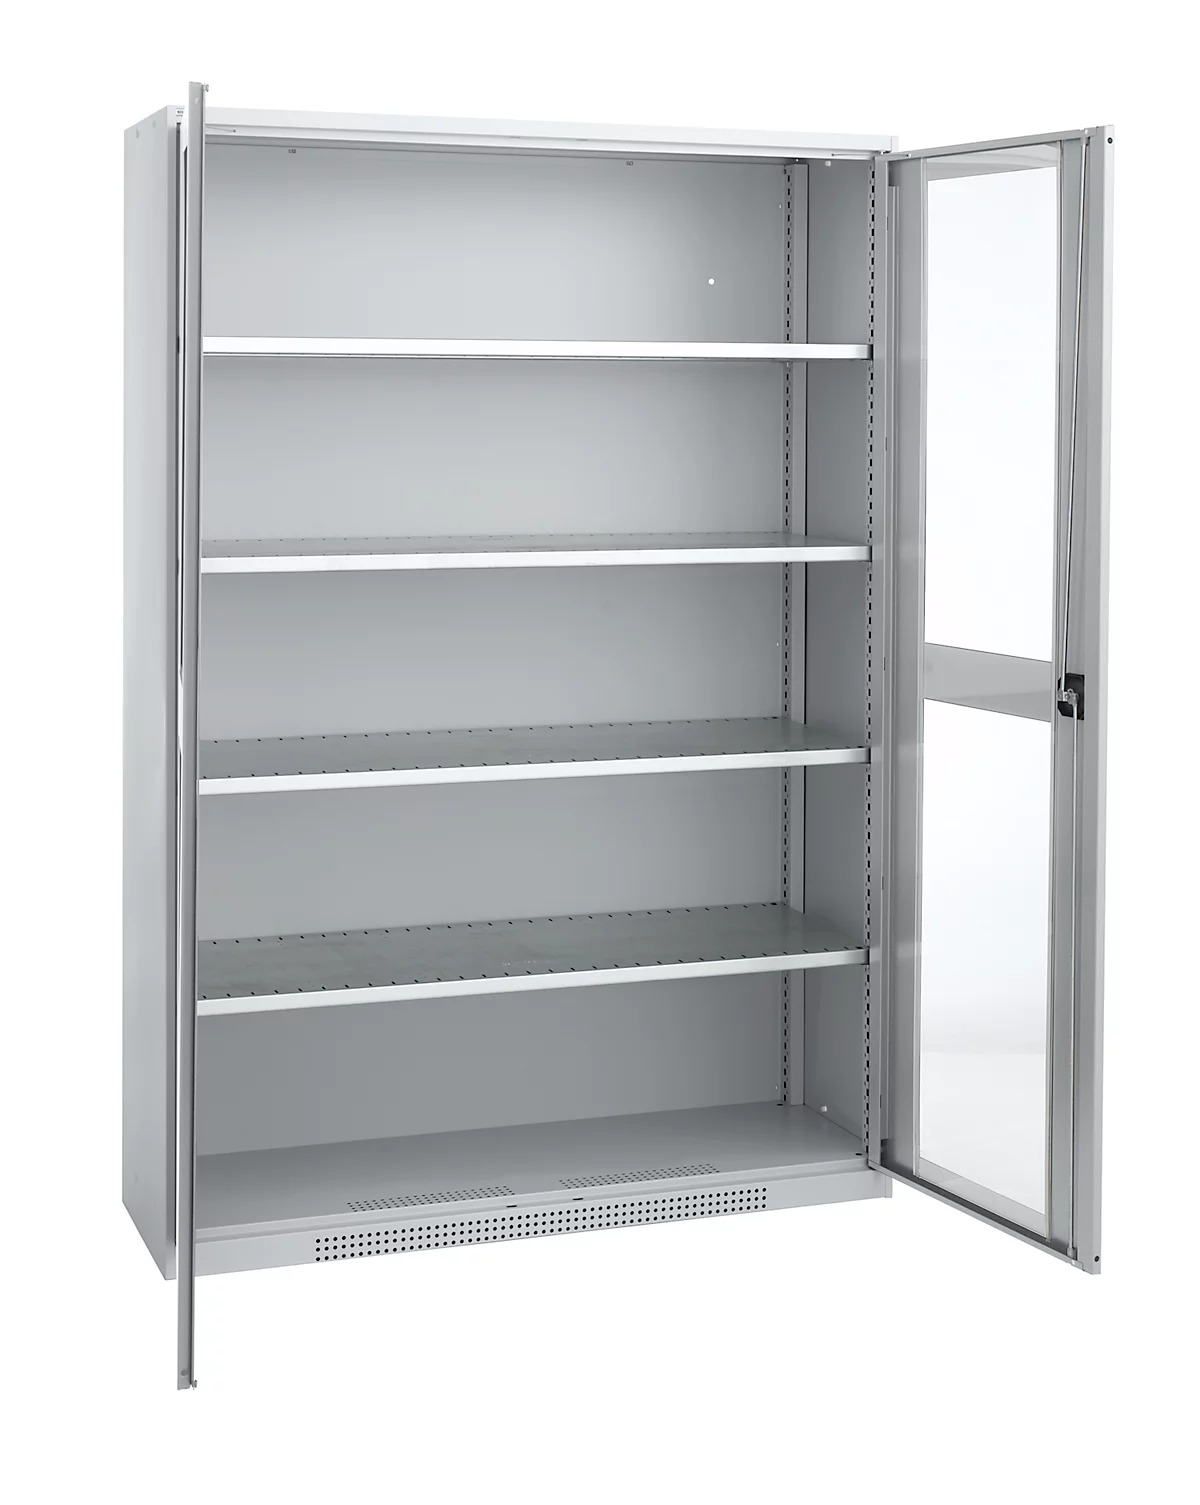 Schäfer Shop Genius armario con puerta giratoria FS, acero, mirilla, agujeros de ventilación, An 1343 x P 520 x Al 1950 mm, 5 OH, aluminio blanco/aluminio blanco, hasta 750 kg 